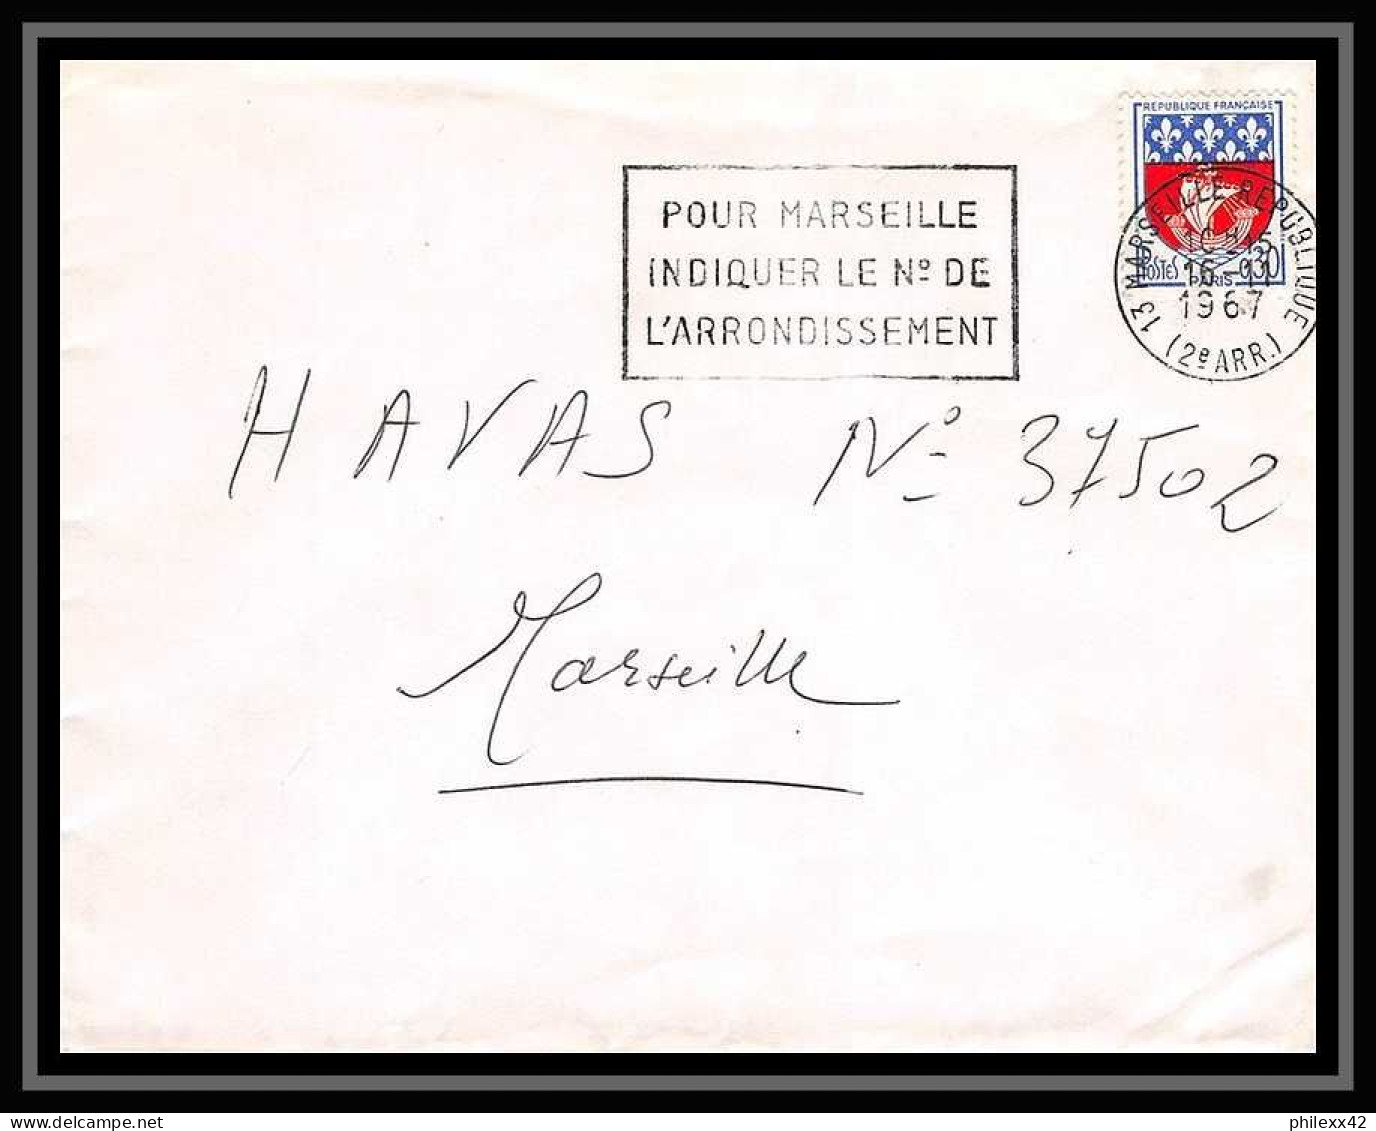 110589 lot de 18 Lettres Bouches du rhone Marseille république pour oblitérations 